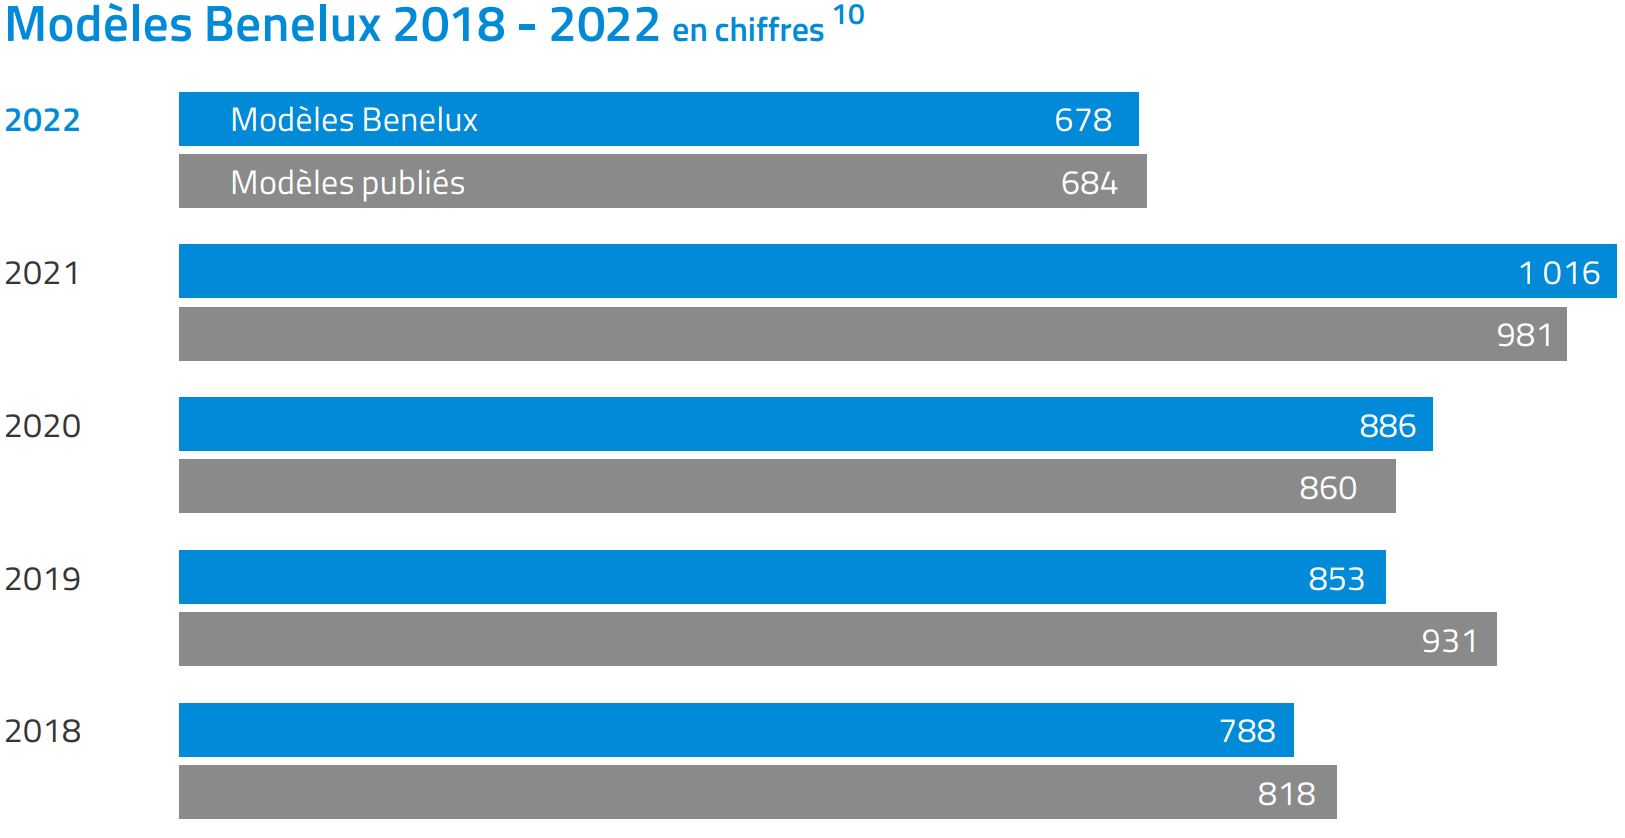 Bar chart Benelux modèles 2018-2022 en chiffres. Principaux résultats : 2022, modèles Benelux : 678, publiés : 684. C'est à la fois moins que les 4 années précédentes.